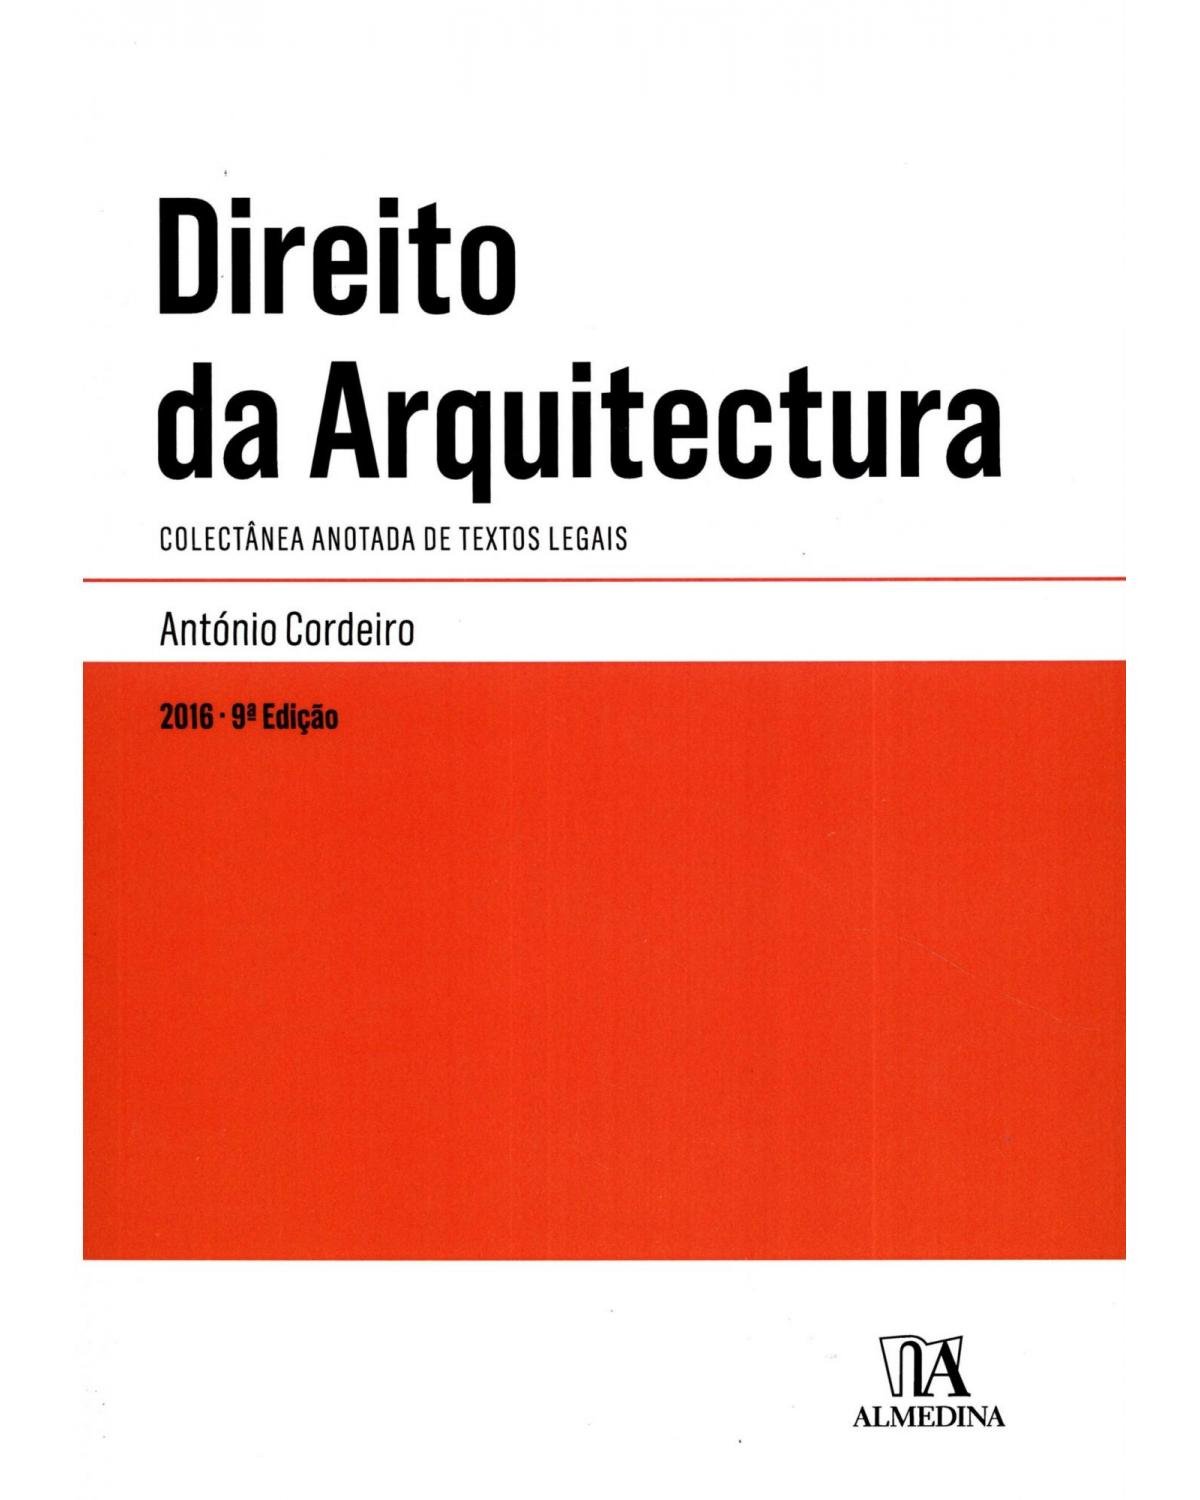 Direito da arquitectura - colectânea anotada de textos legais - 9ª Edição | 2016